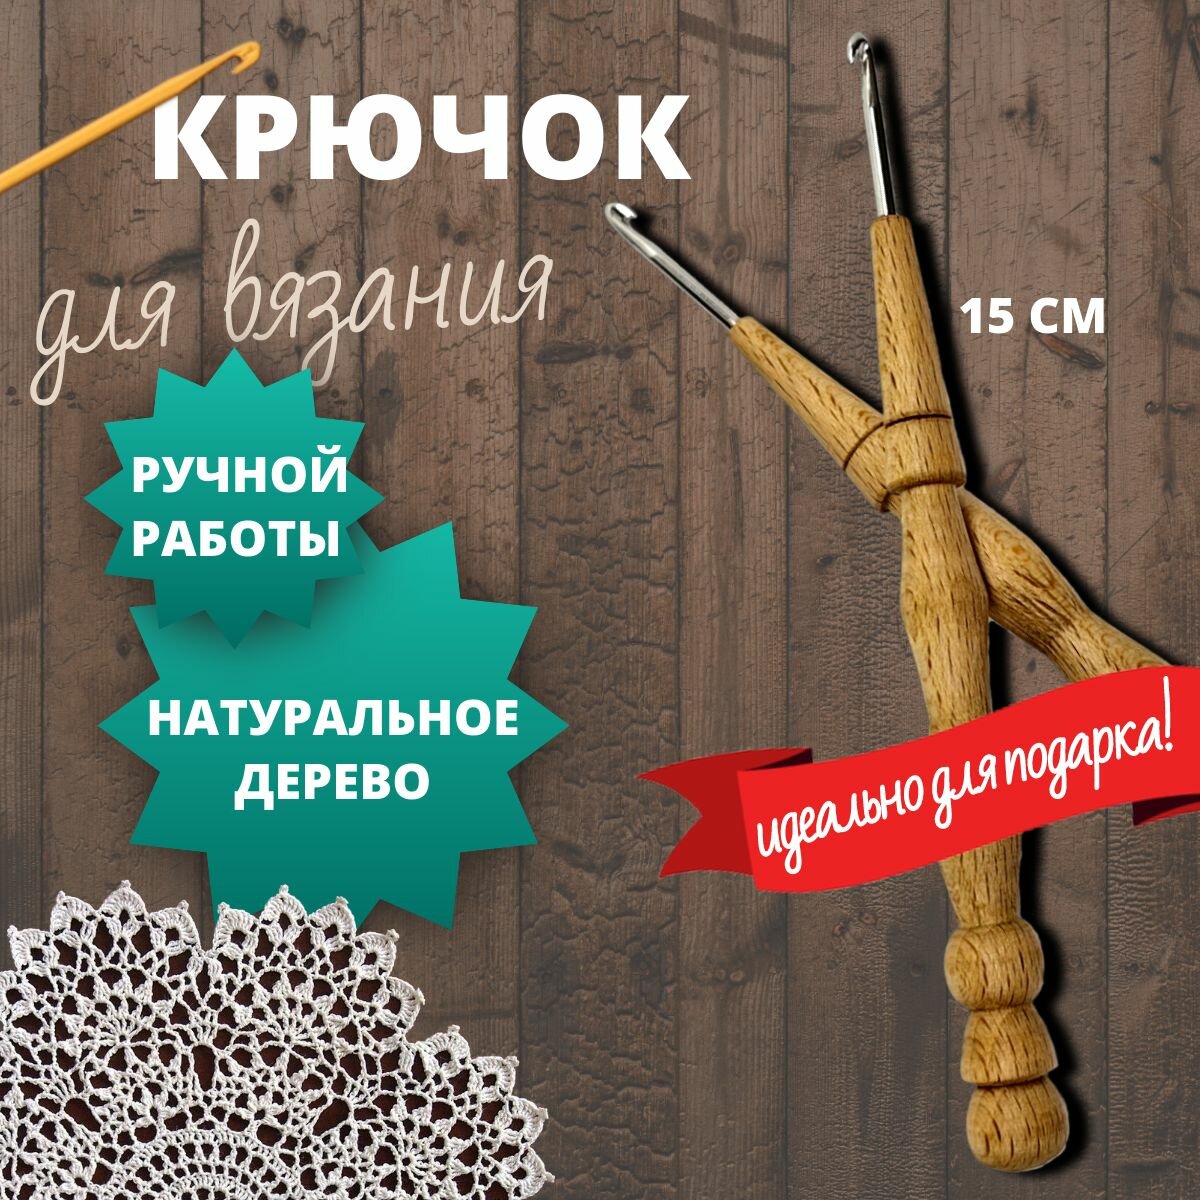 Крючок для вязания 3.5 мм с деревянной ручкой, ручной работы из бука, набор для вязания